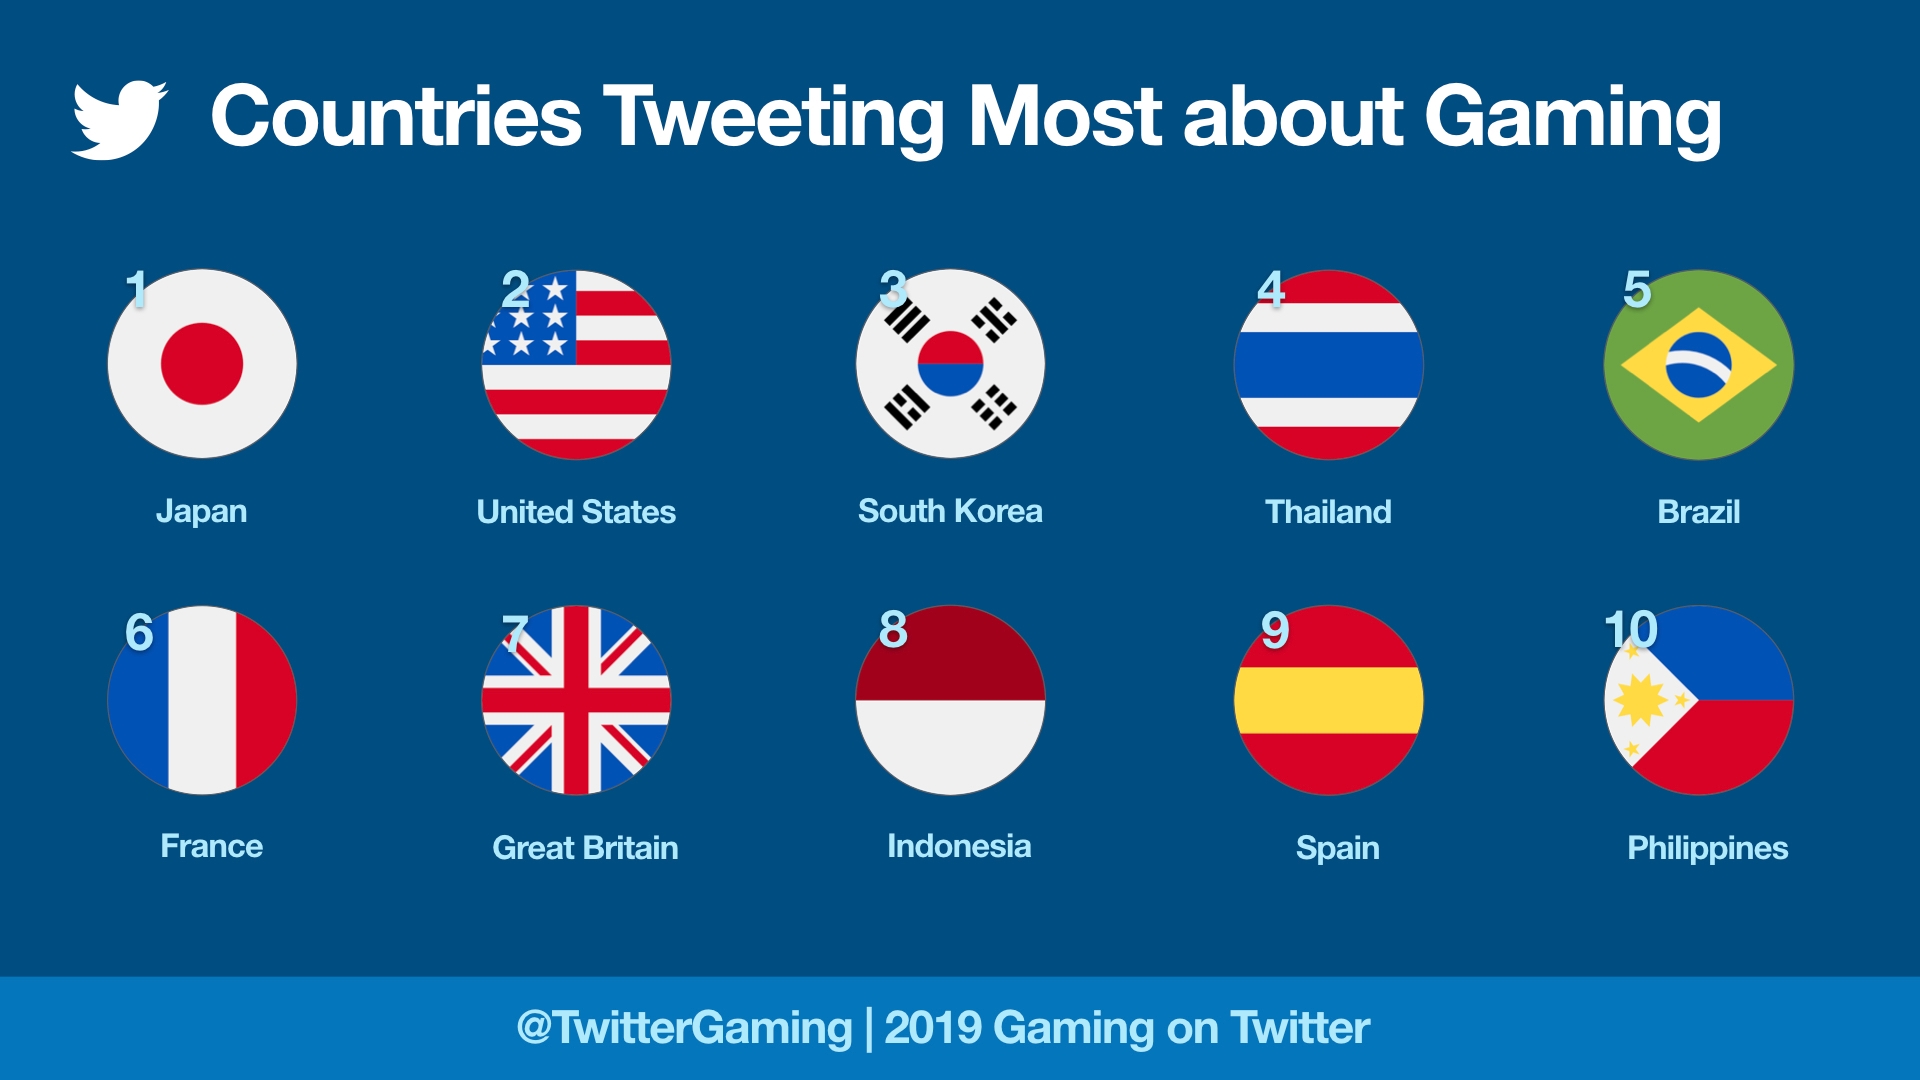 2019年Twitter游戏讨论度排行 日本为最热衷讨论游戏国家